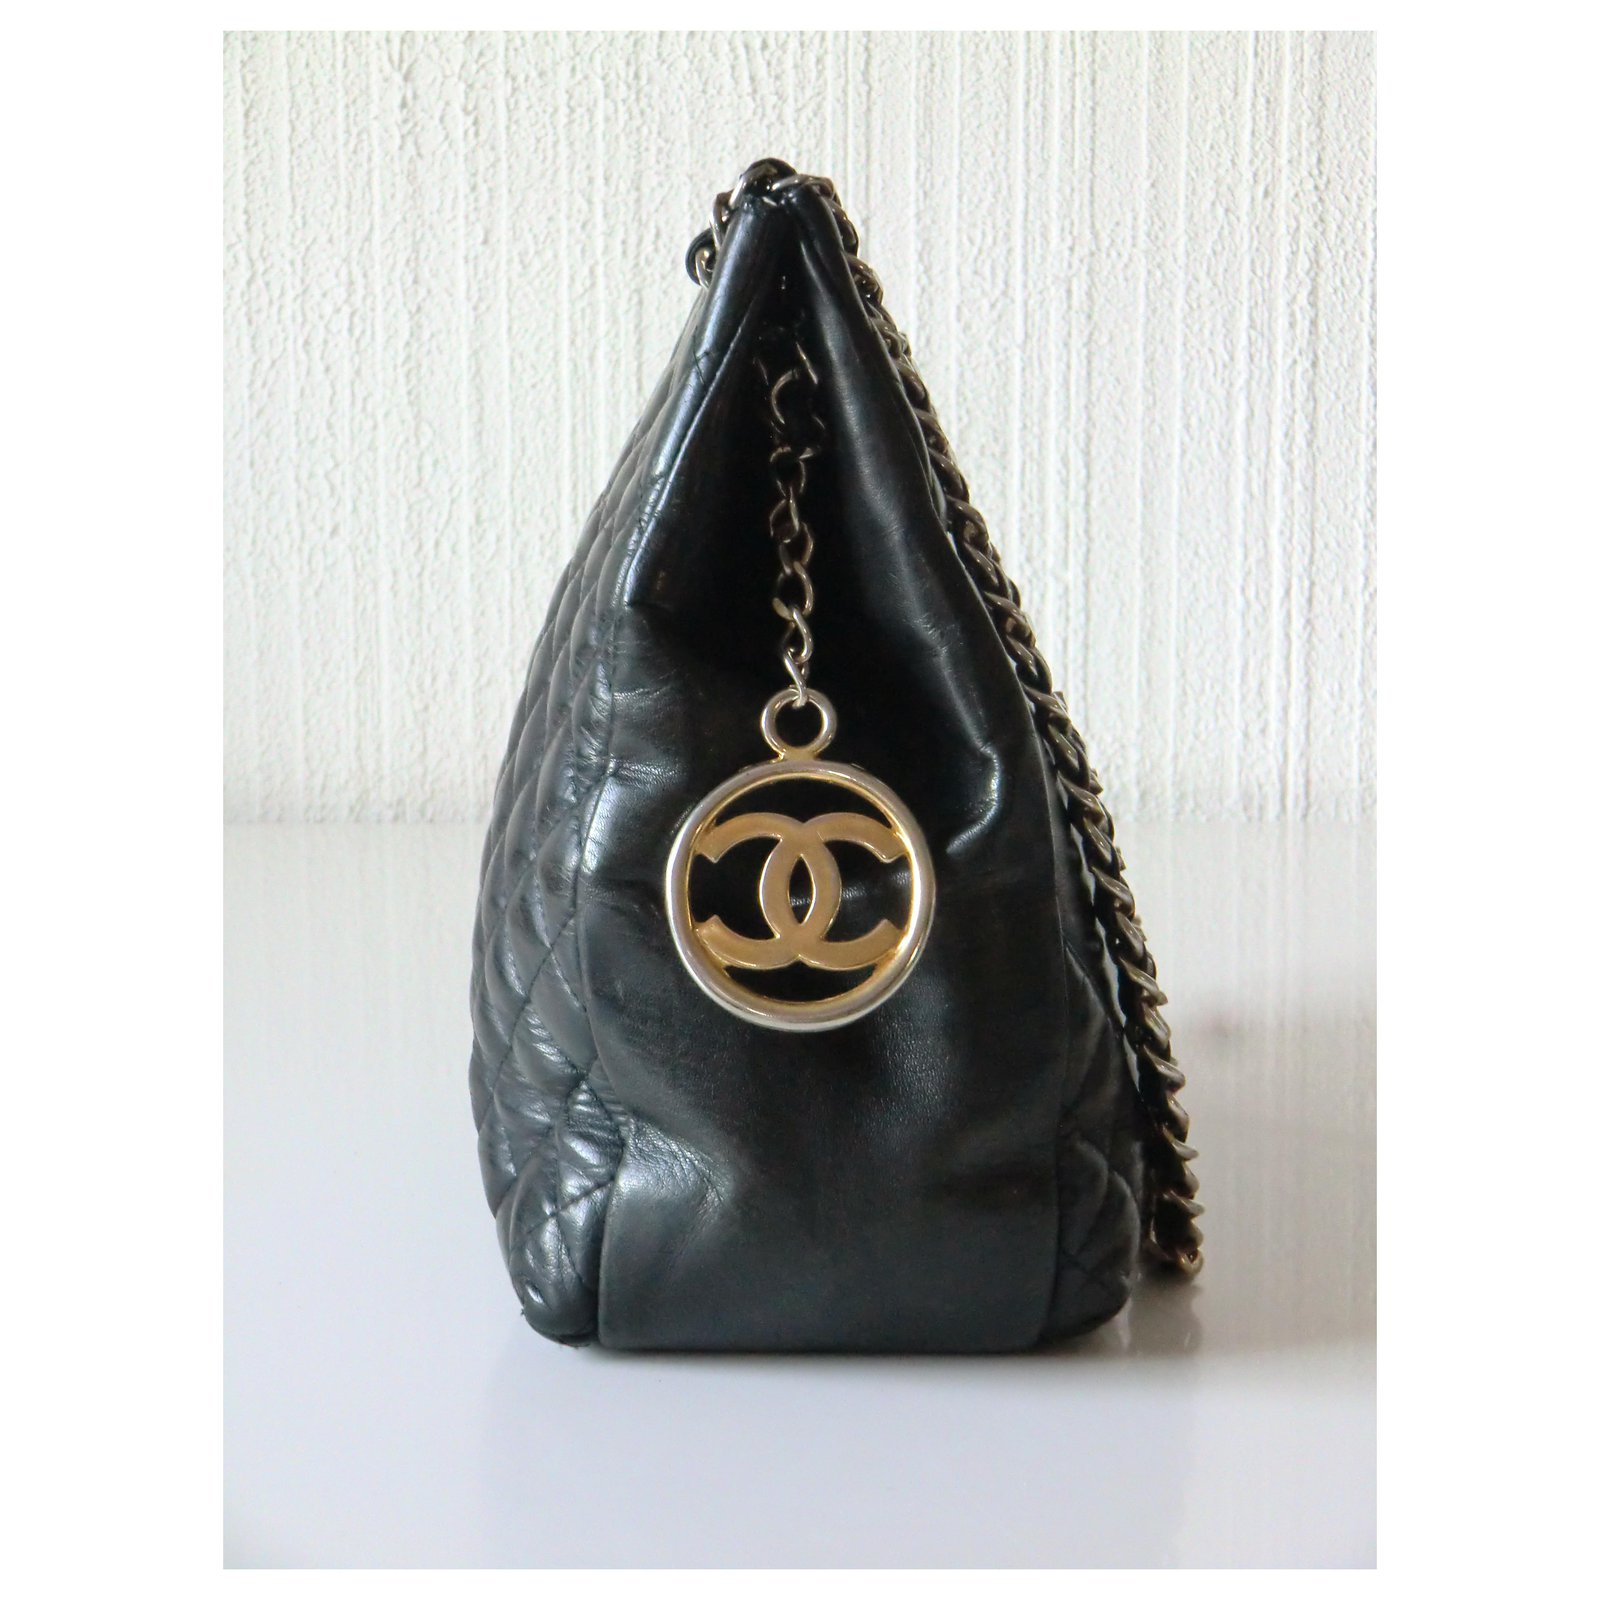 vintage chanel handbag black leather